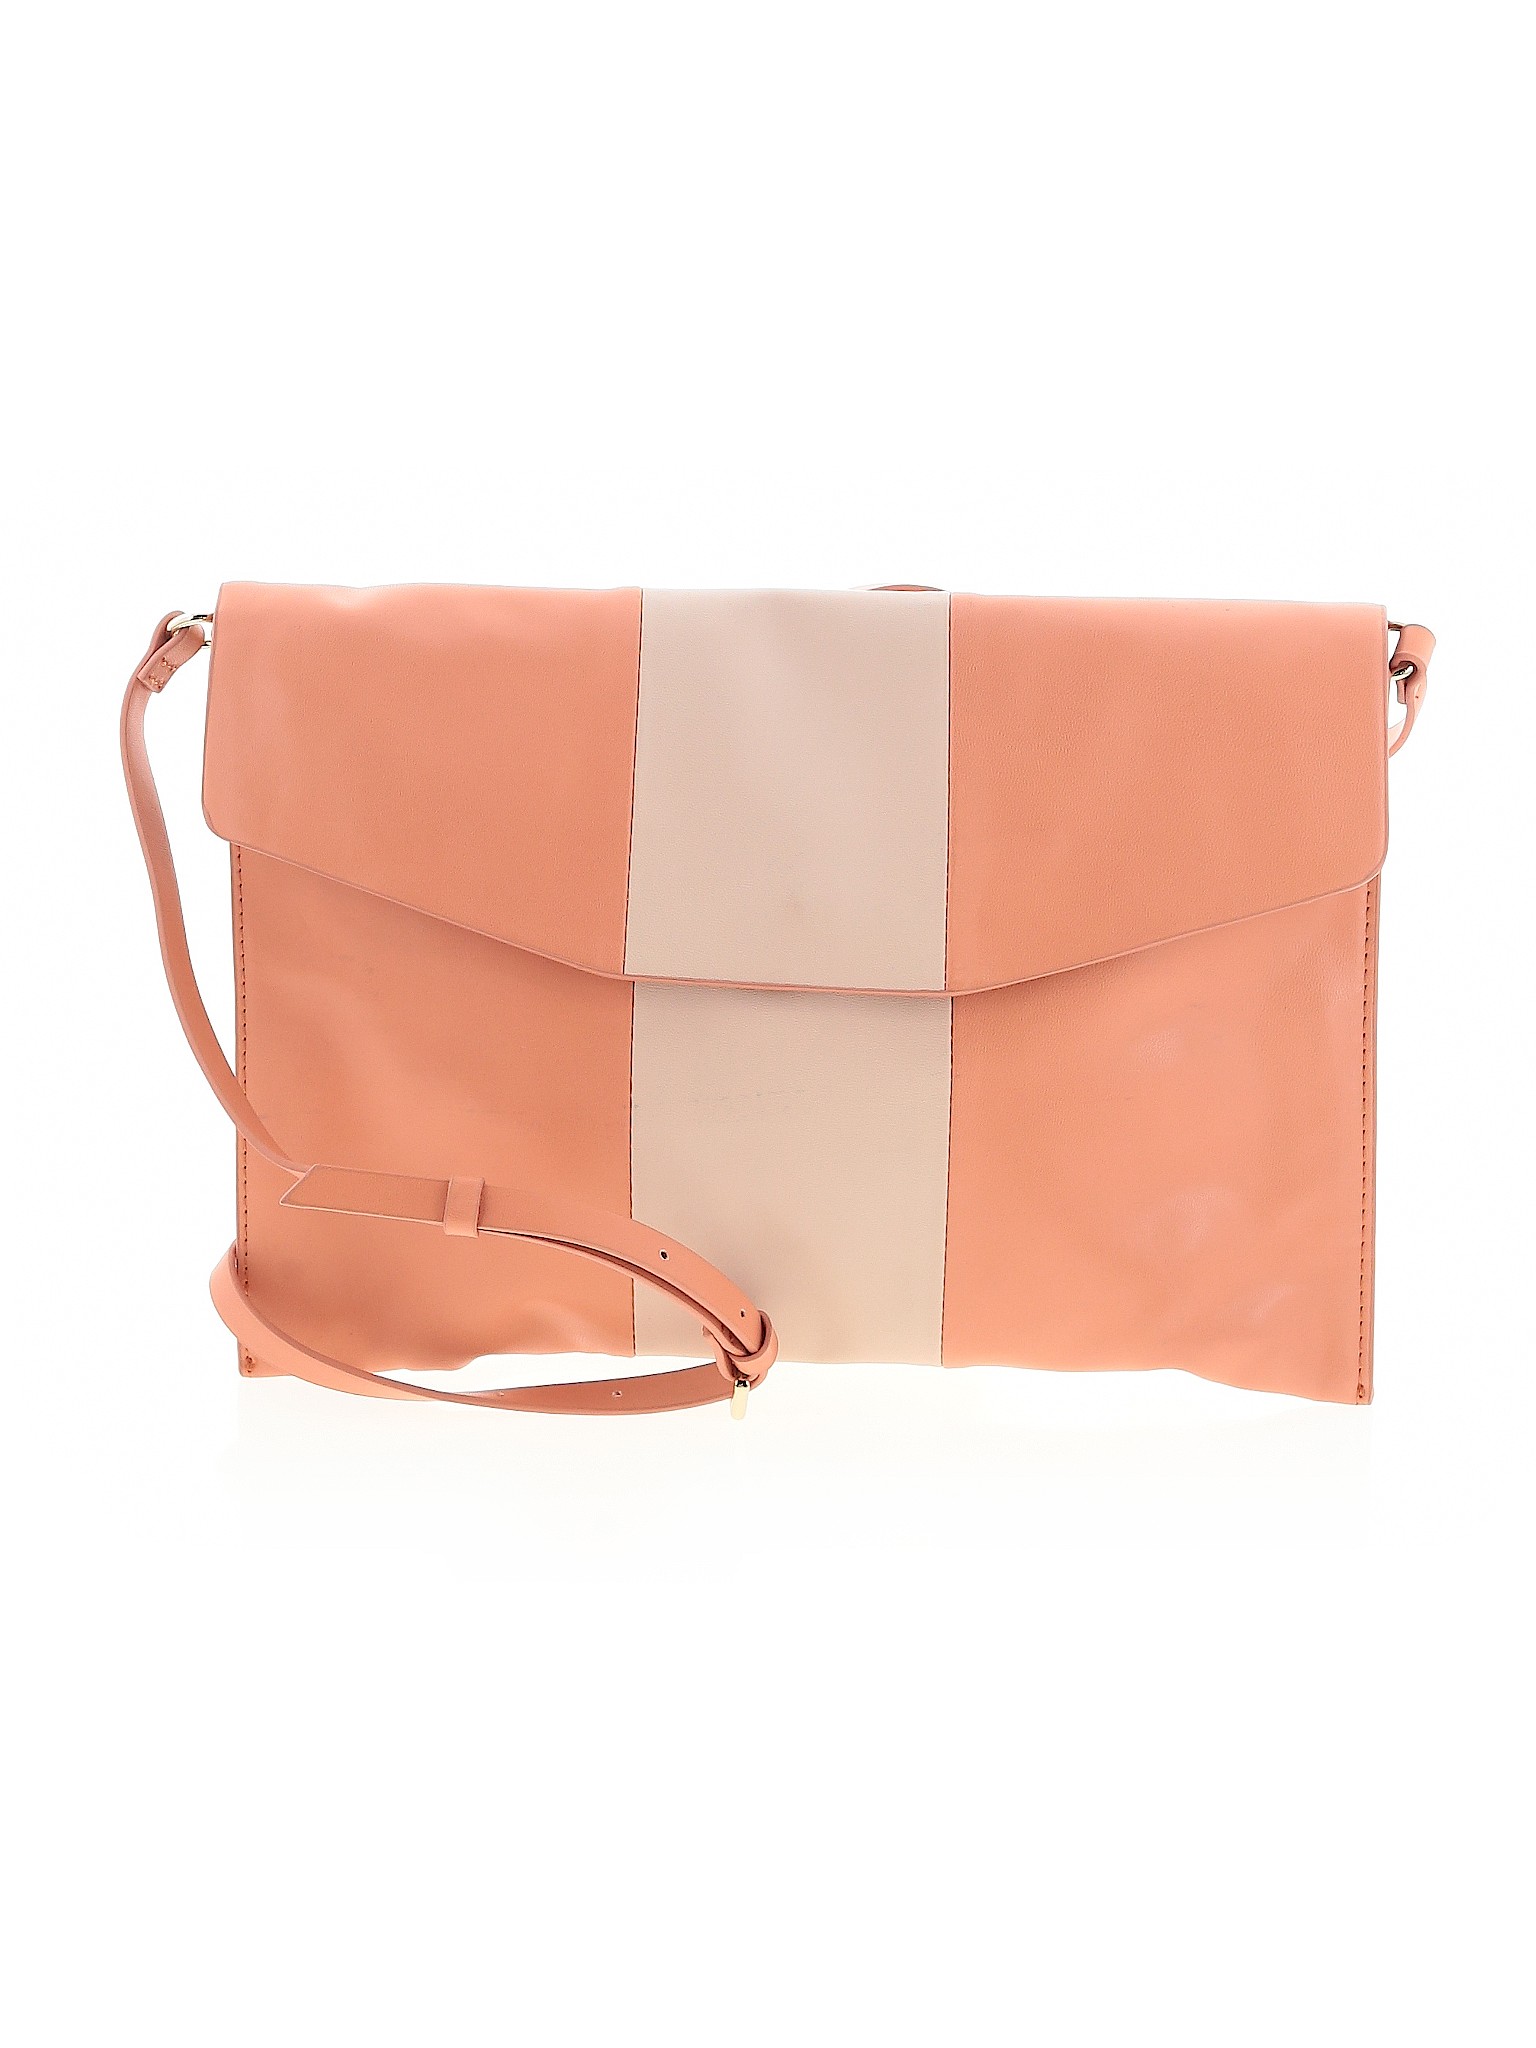 Zara Basic Women Pink Crossbody Bag One Size | eBay